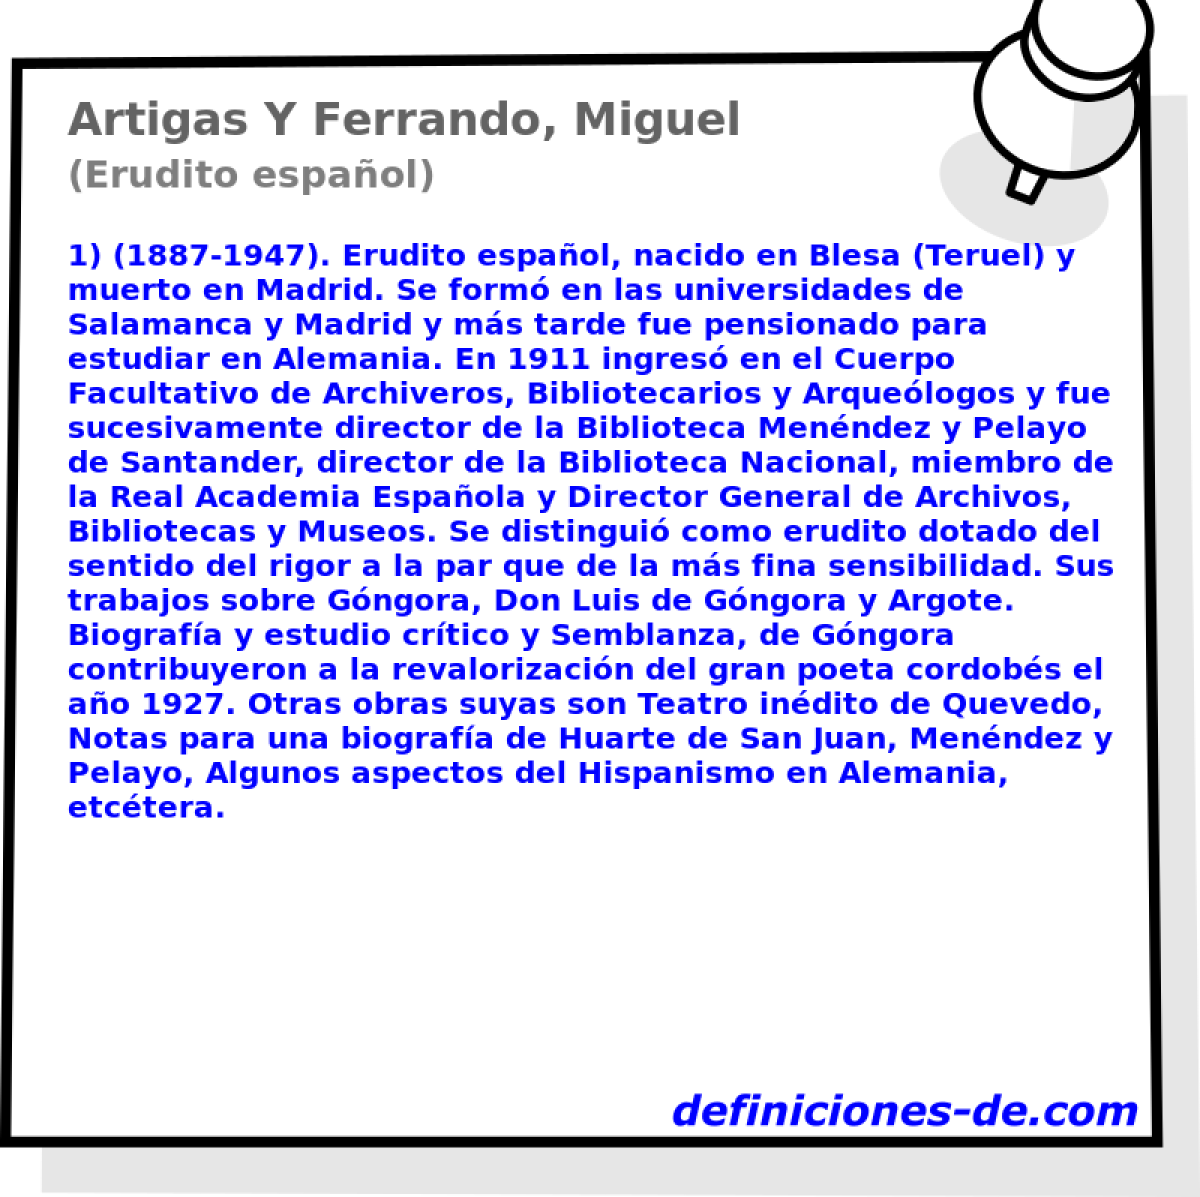 Artigas Y Ferrando, Miguel (Erudito espaol)